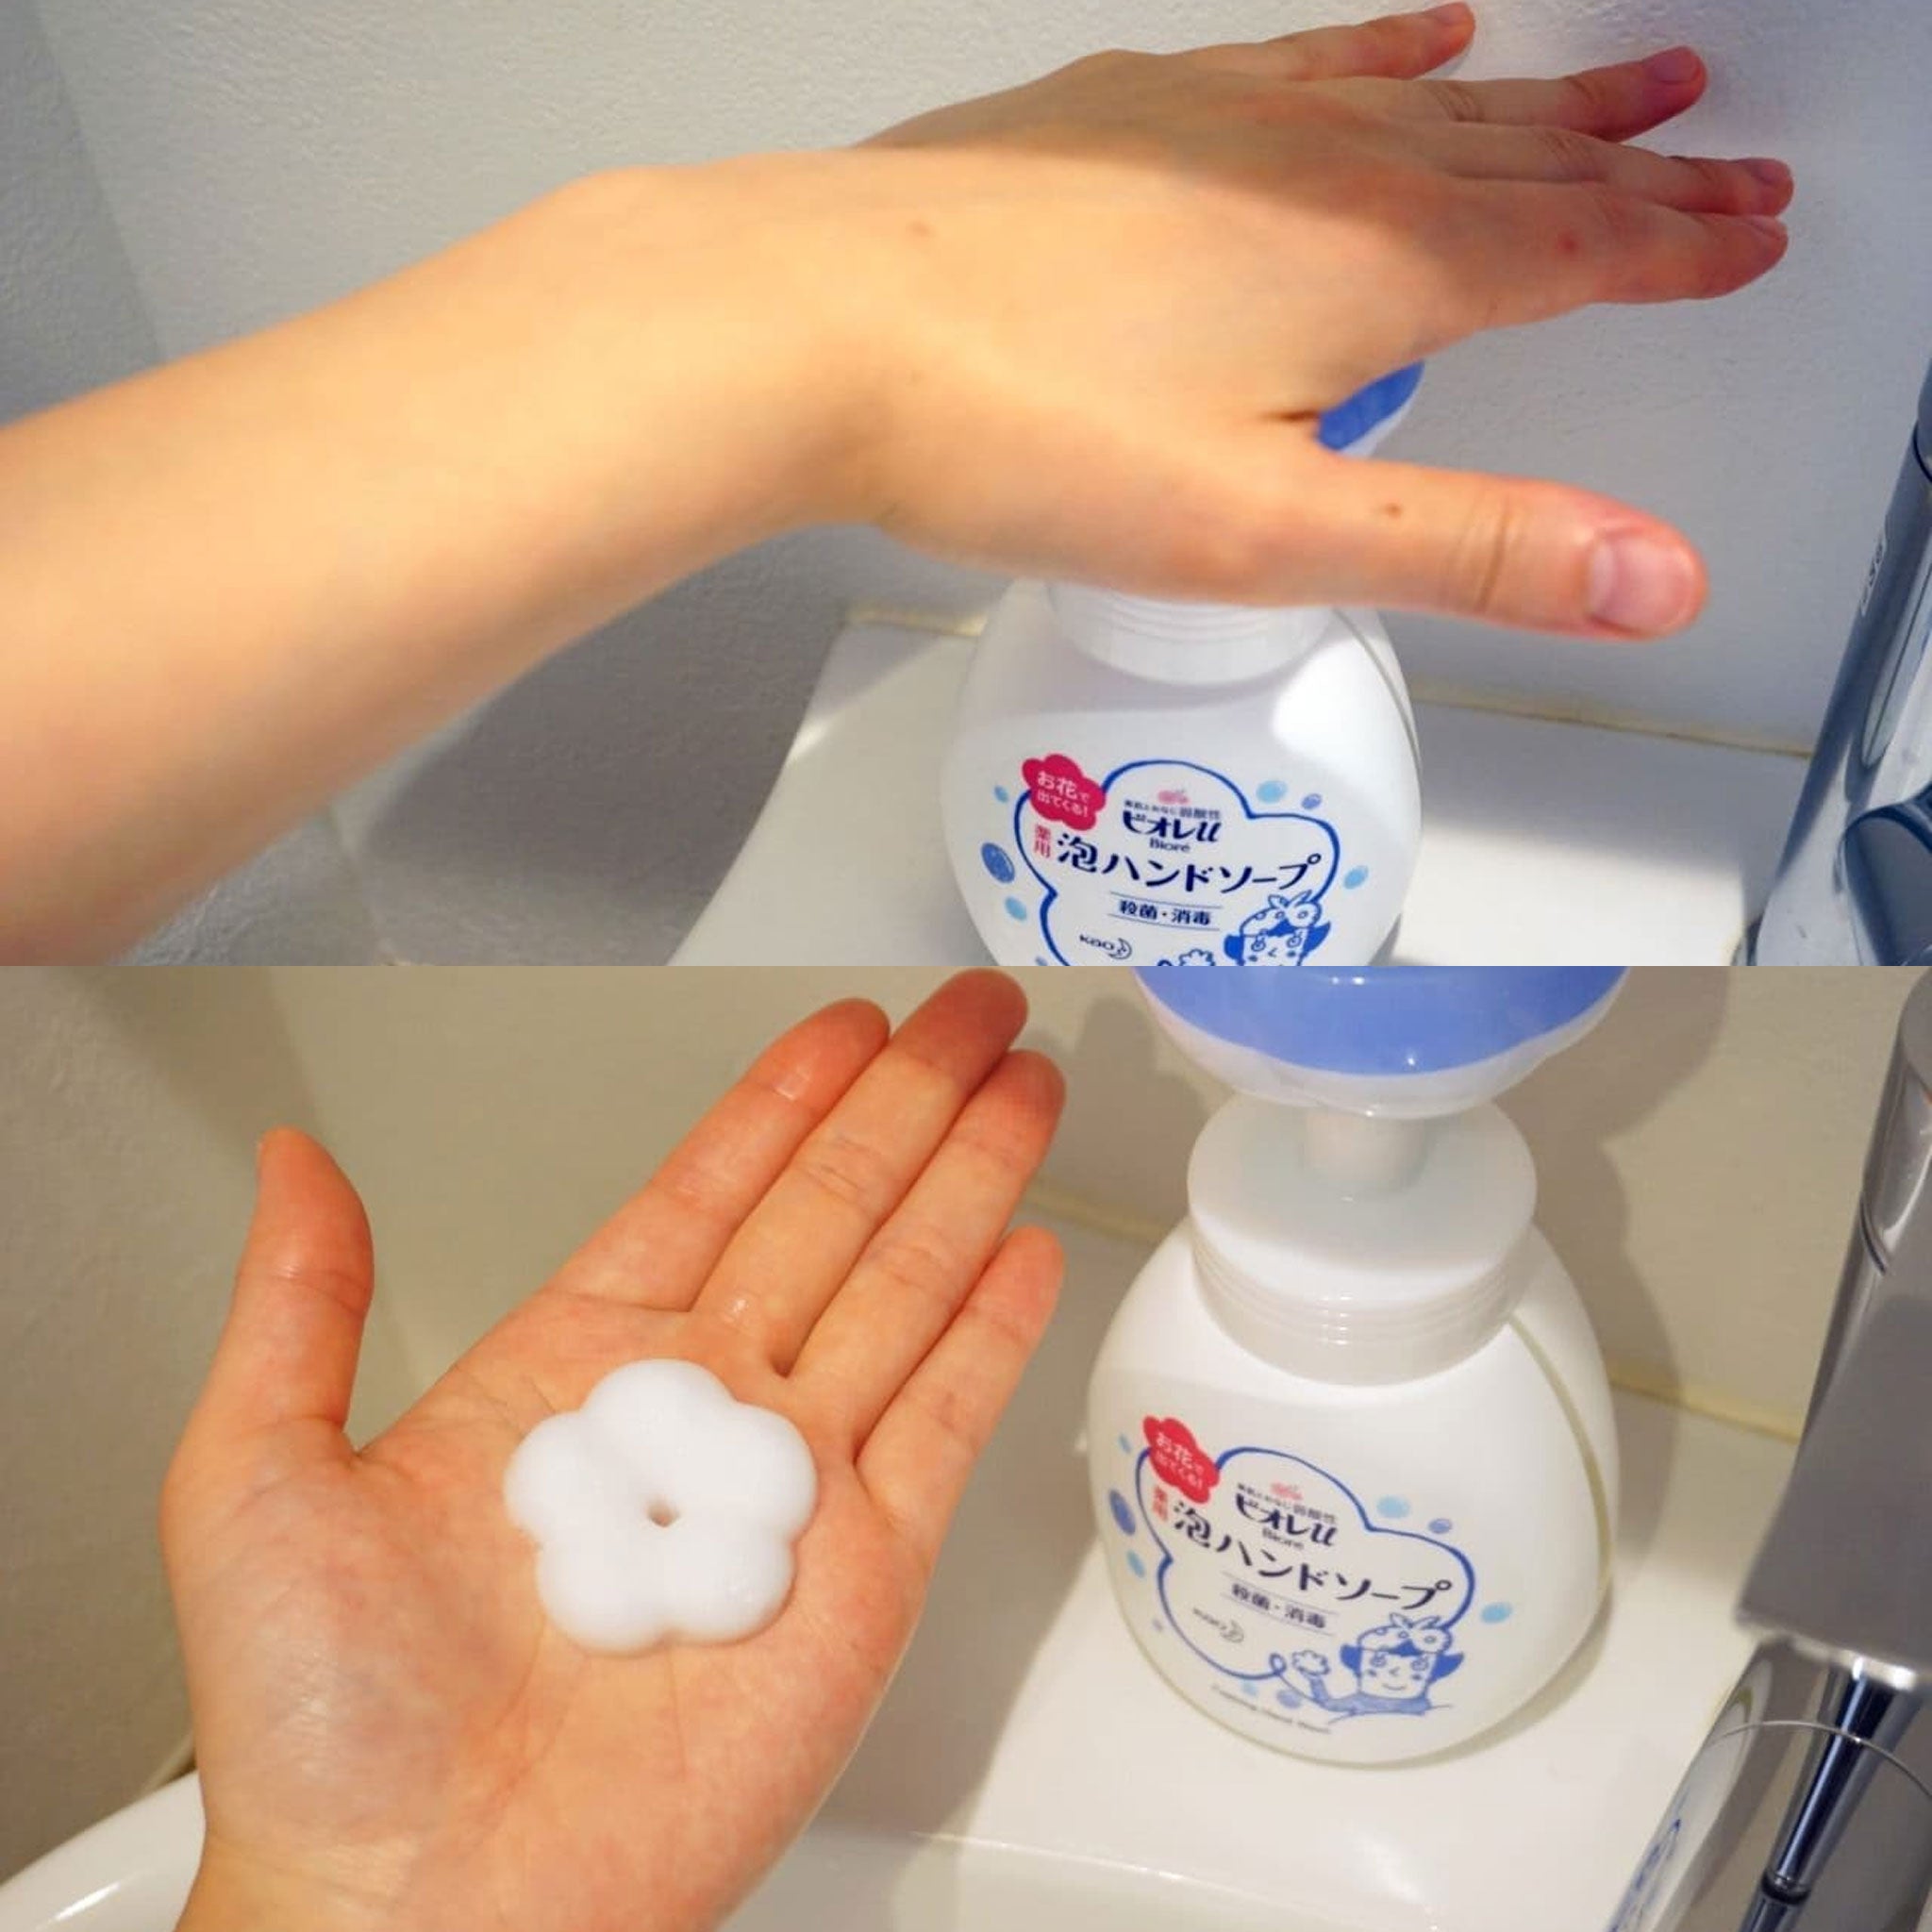 KAO BIORE 3D Foaming Hand Soap Flower Shape 250ml